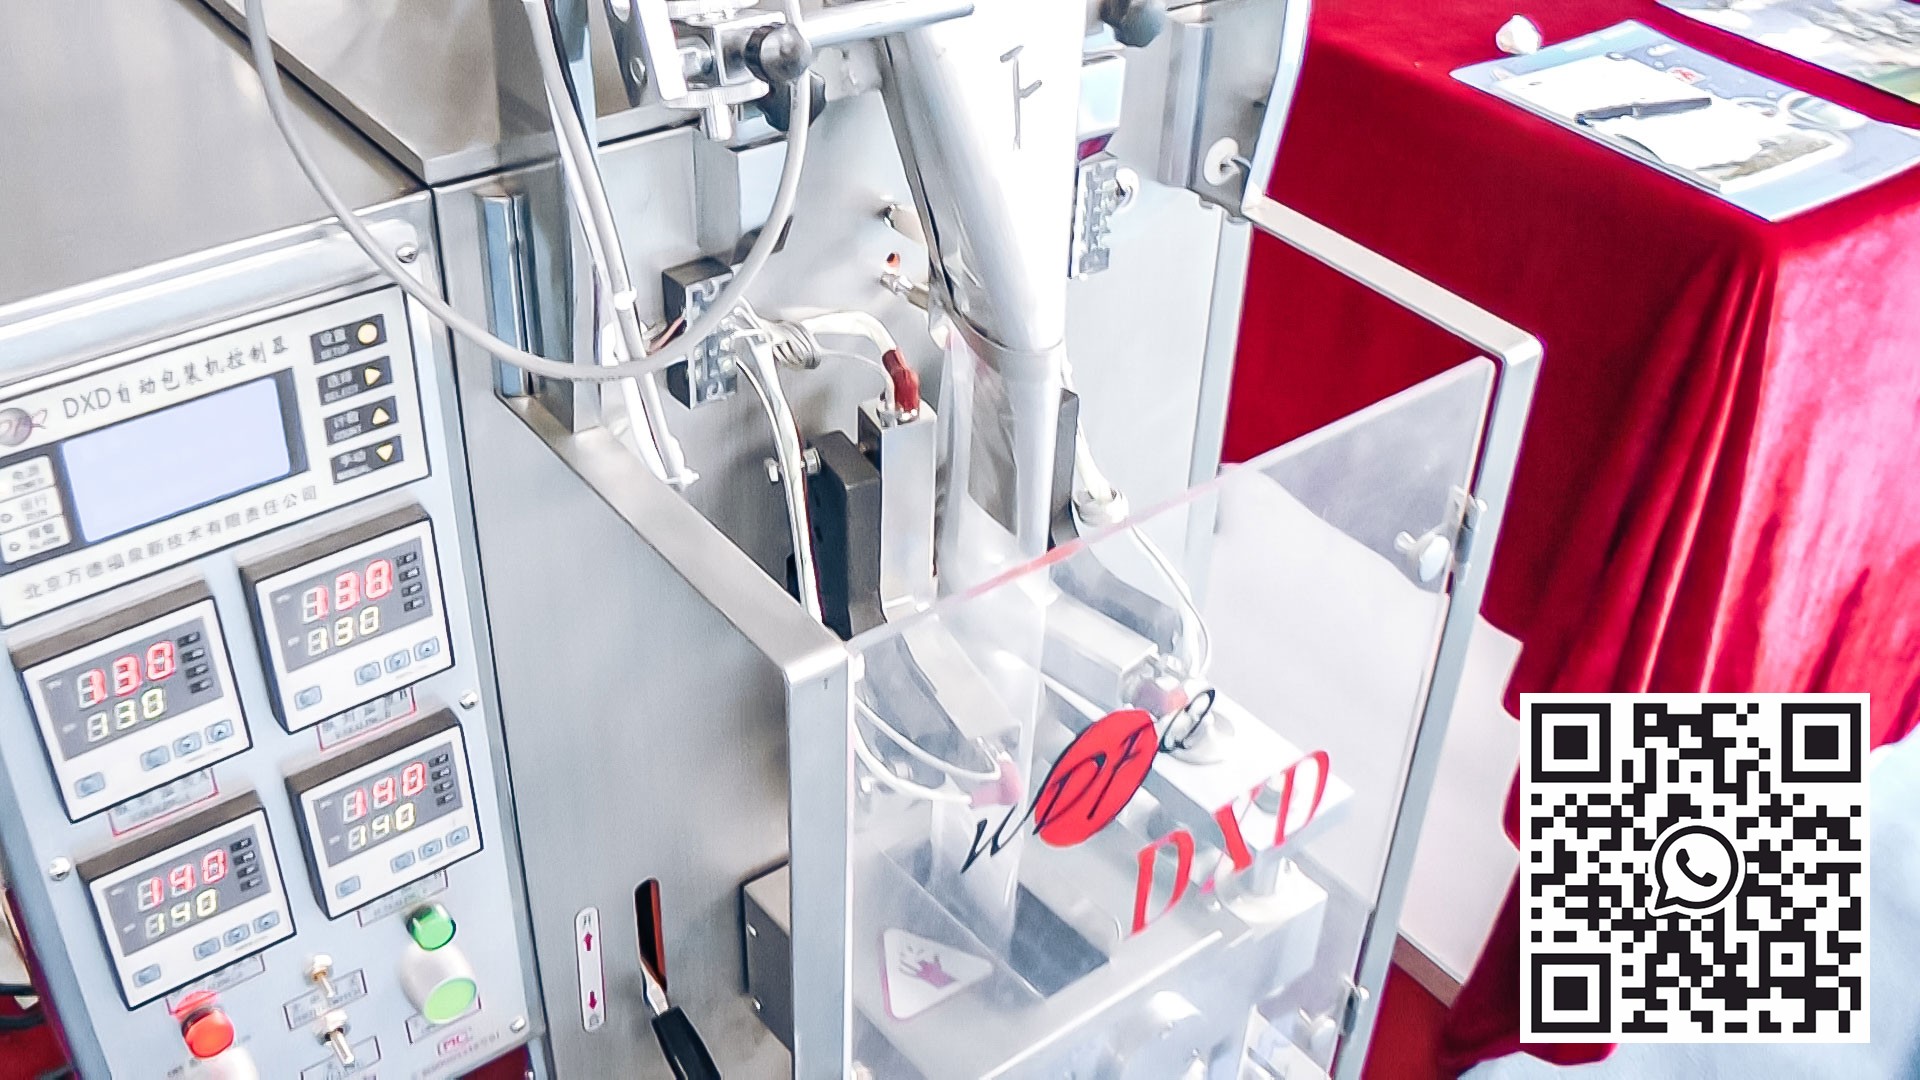 Automatické zařízení pro balení prášků a granulí do plastových sáčků ve farmaceutické výrobě